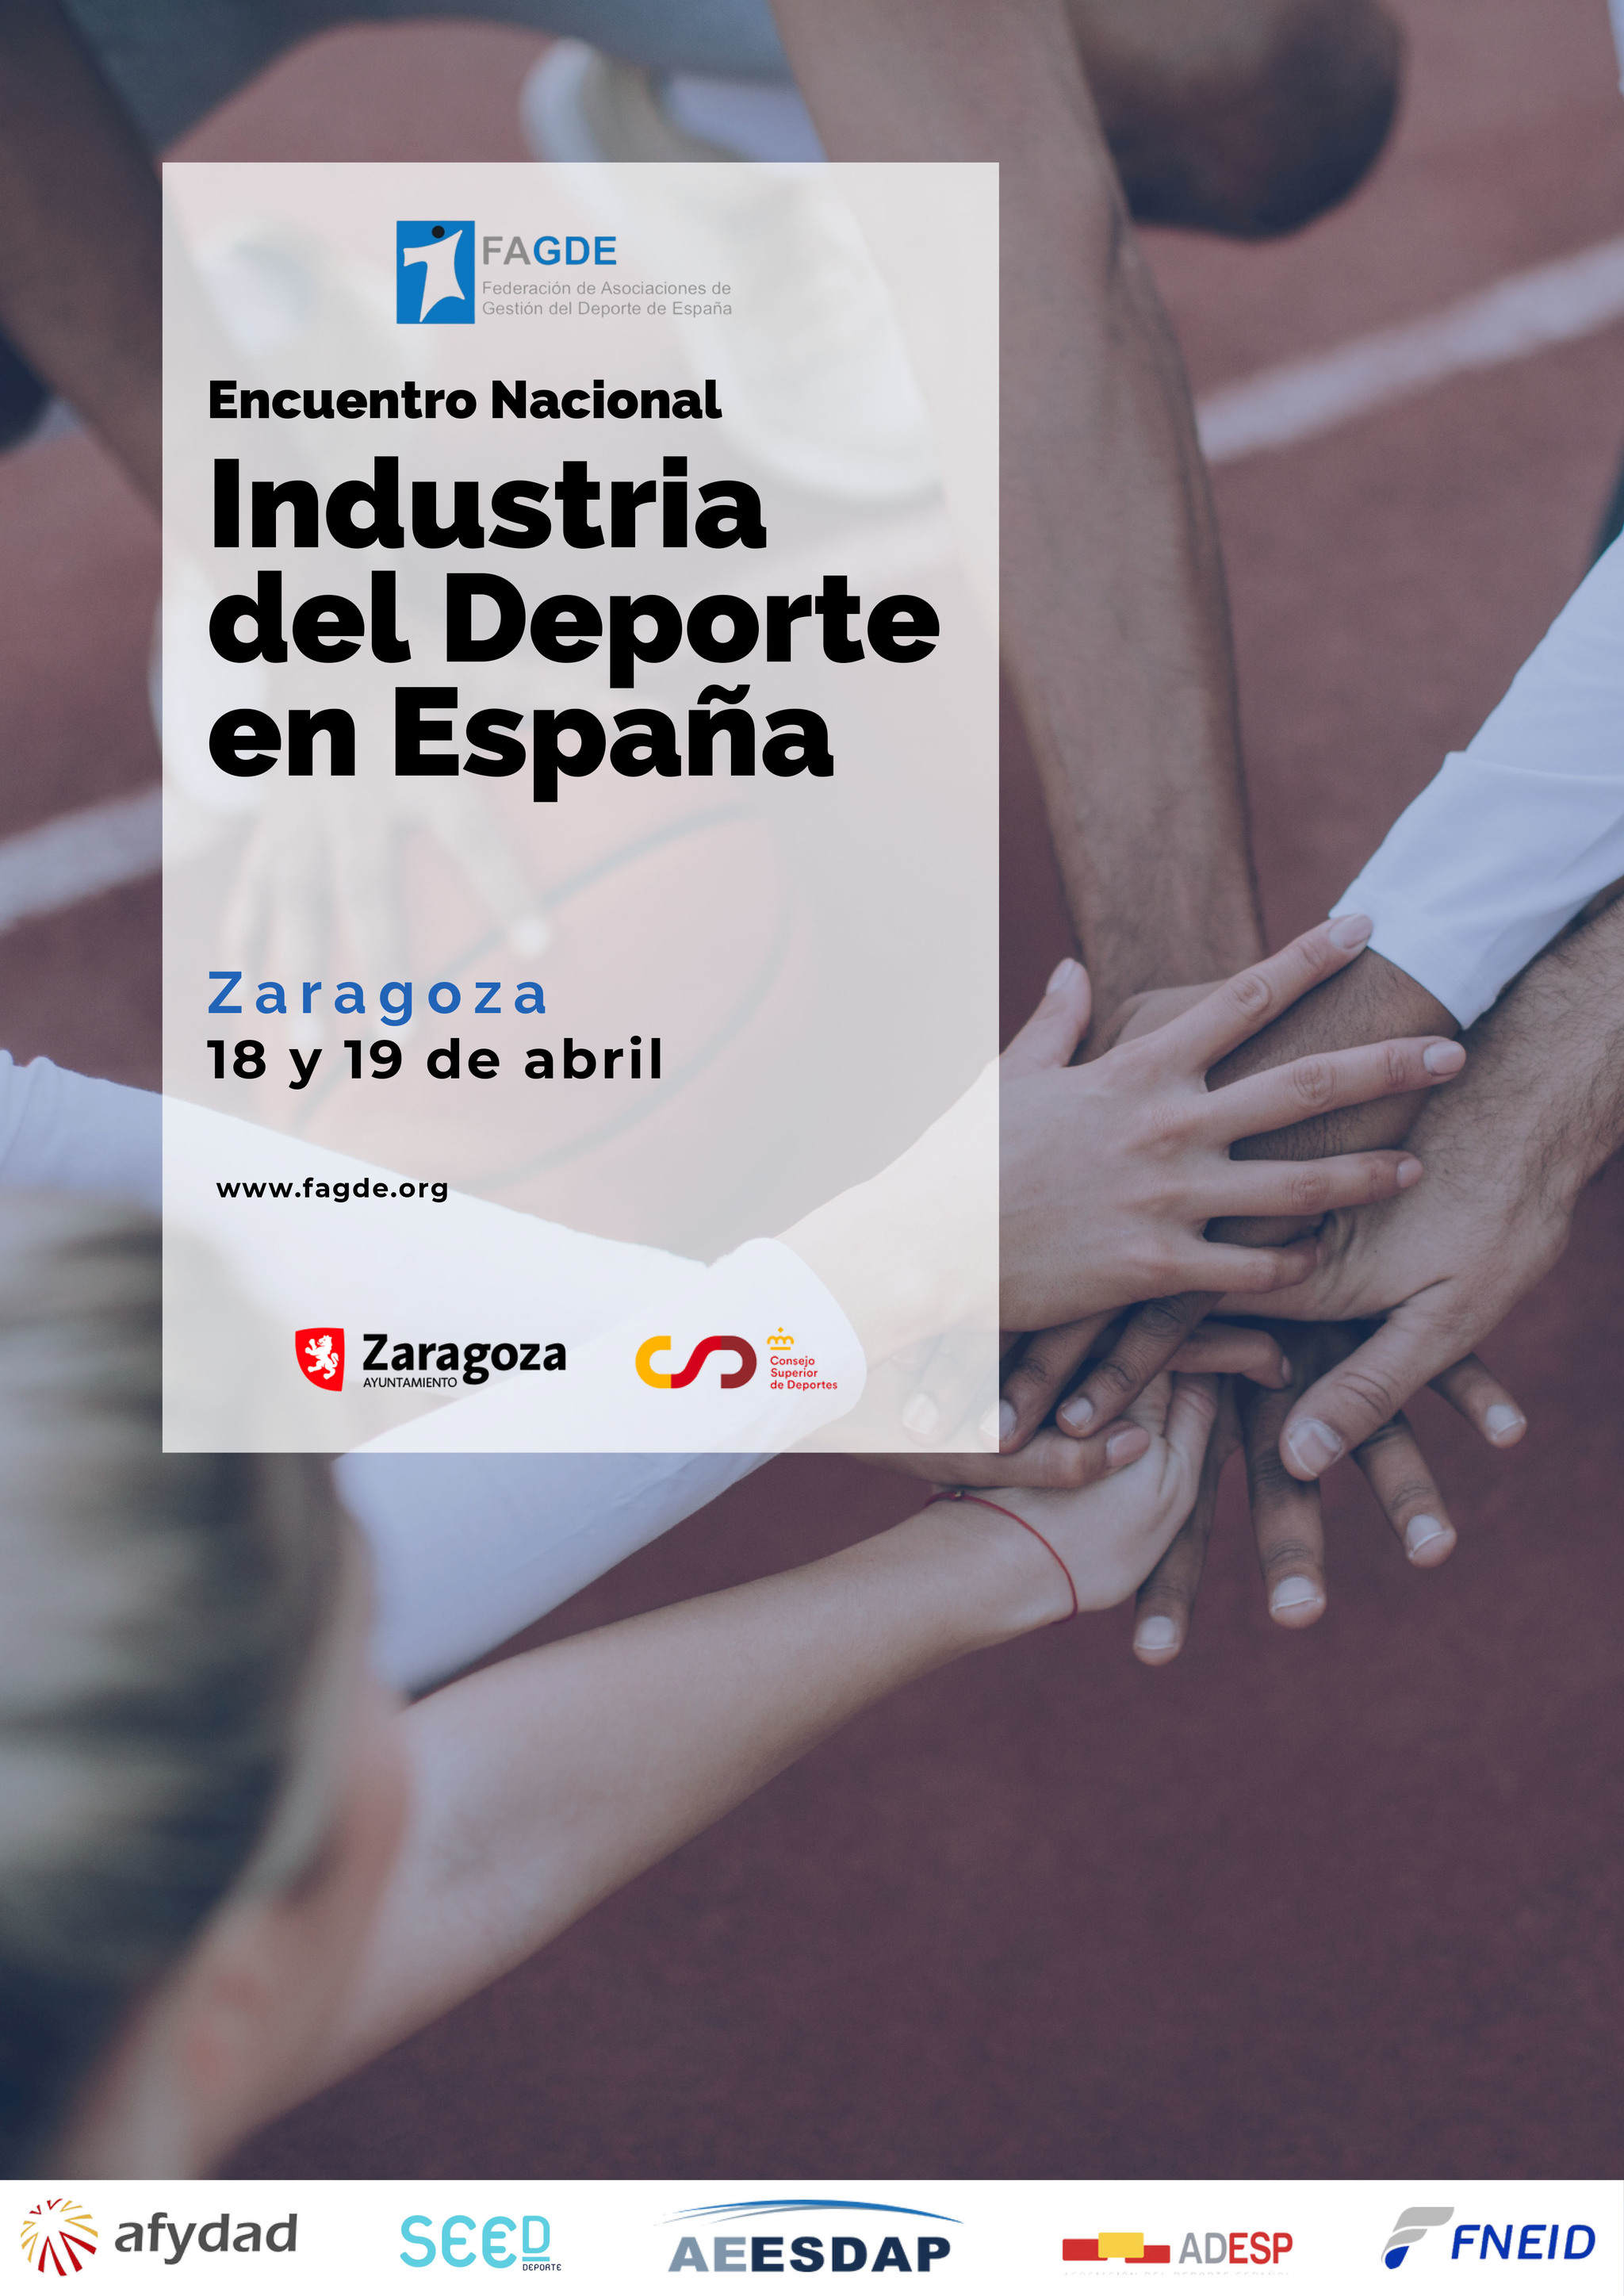 Marca participa en el 1 Encuentro Nacional de la Industria del Deporte en Zaragoza